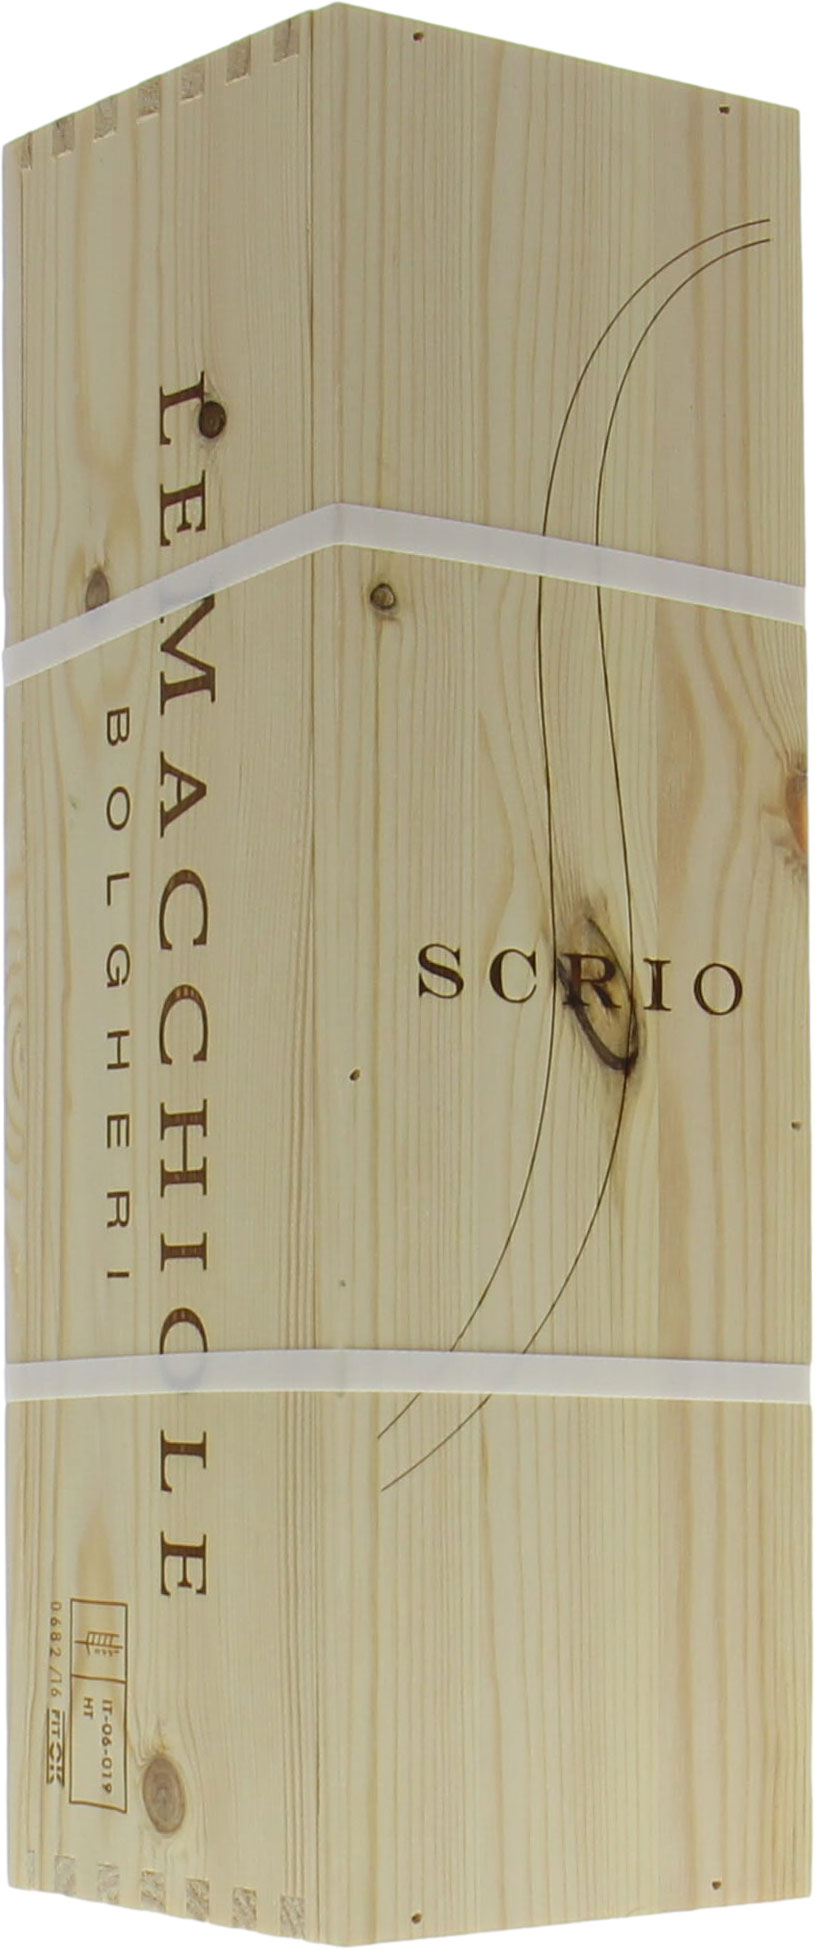 Le Macchiole - Scrio Rosso 2013 Perfect